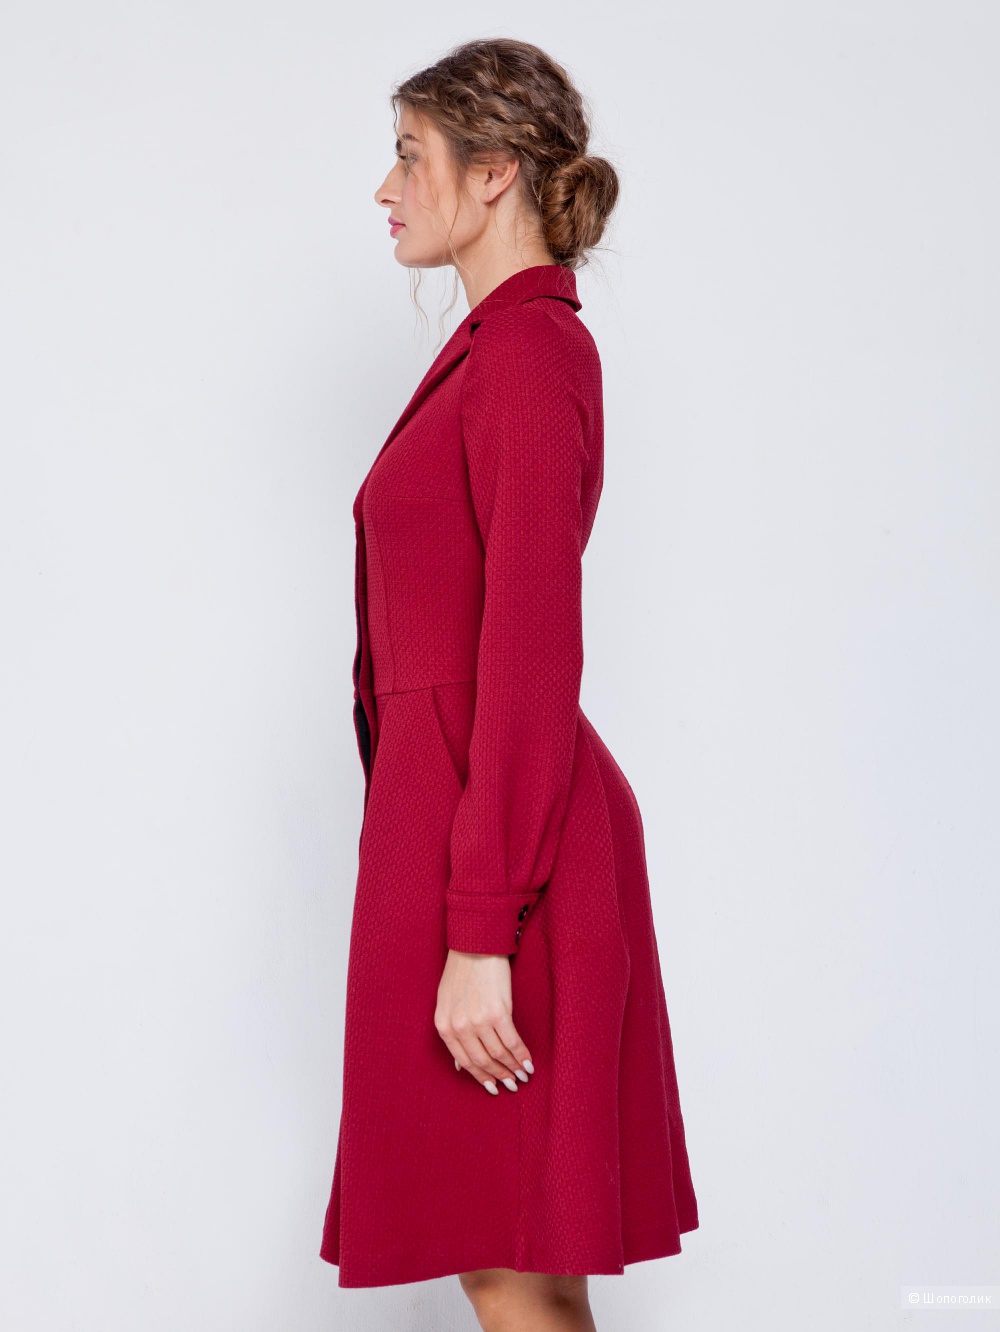 Платье-пальто с отложными бортами воротника, винного цвета , фирма Grand ,46 размер